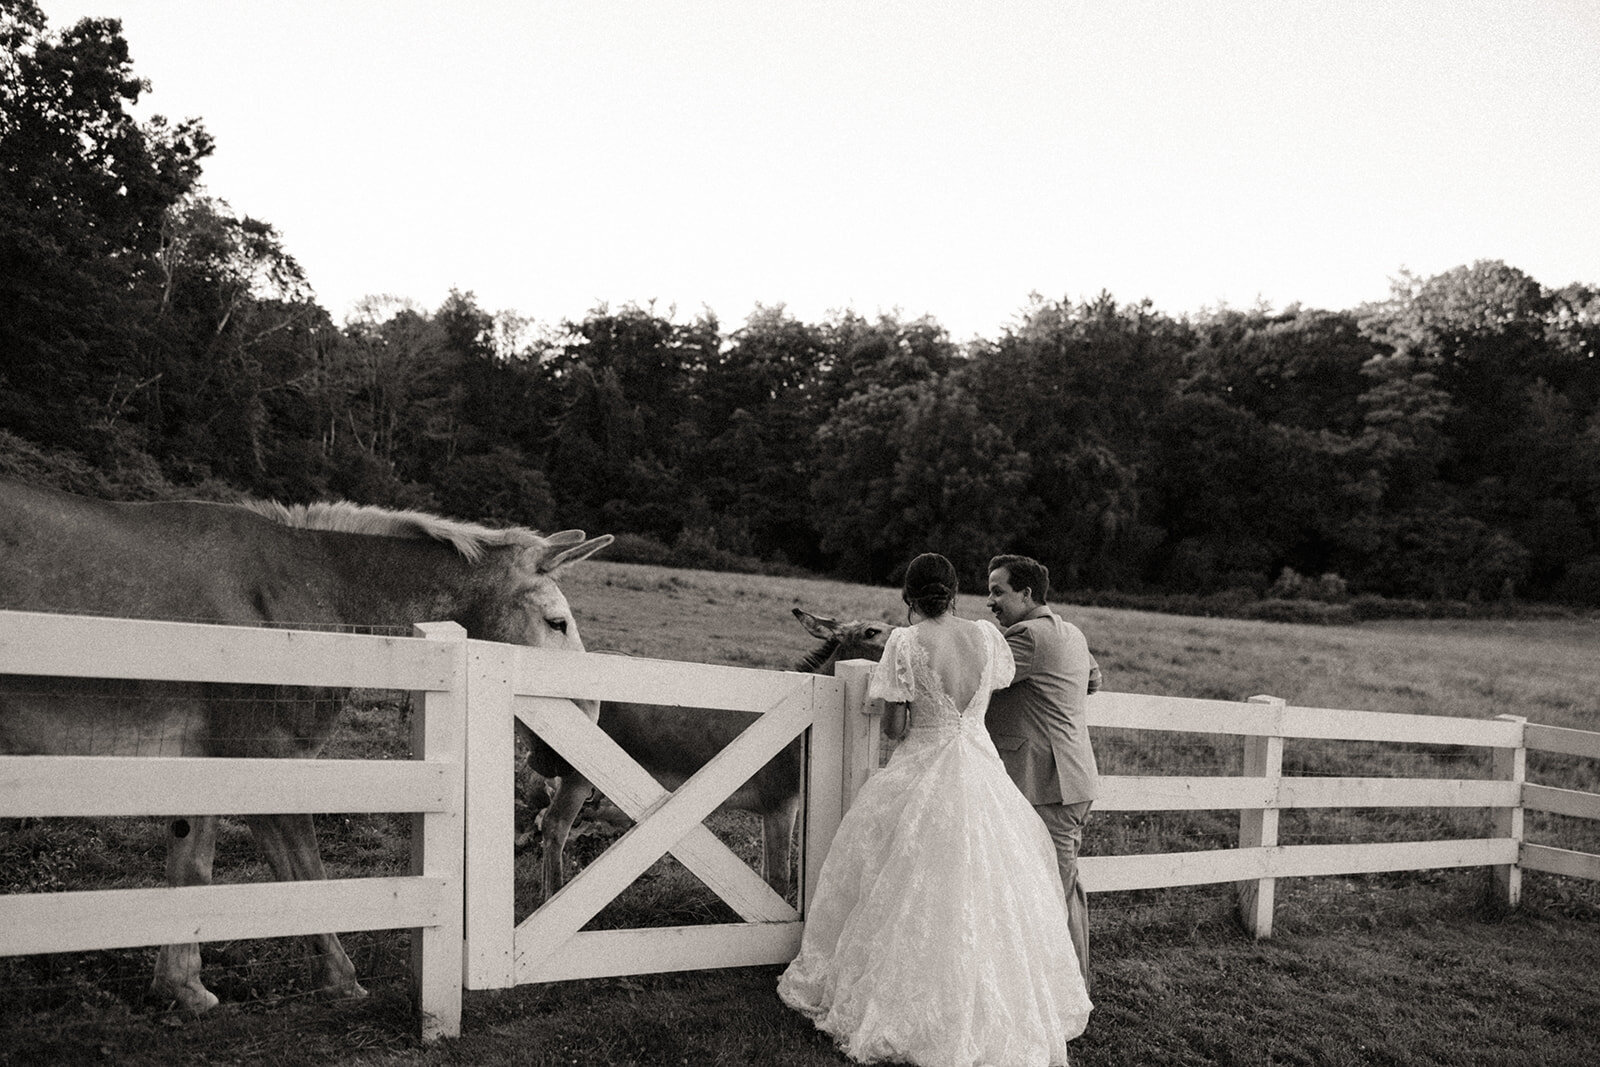 Donkeys at Pierce Farm at Witch Hill Wedding | Topsfield, MA Wedding Venue | Sydney Kerbyson Photography